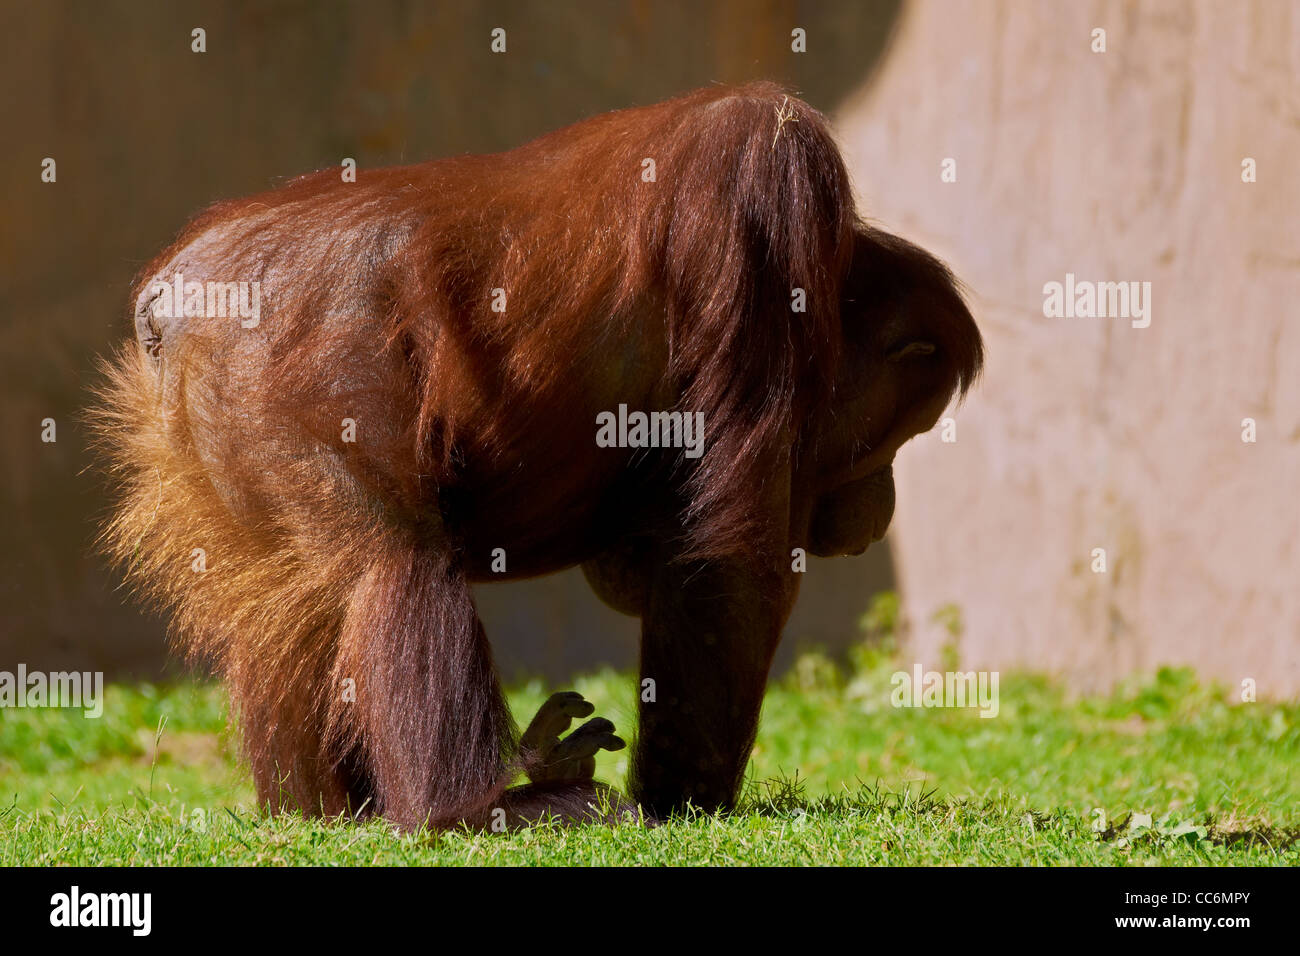 Orangután, los grandes simios, cautiva Foto de stock